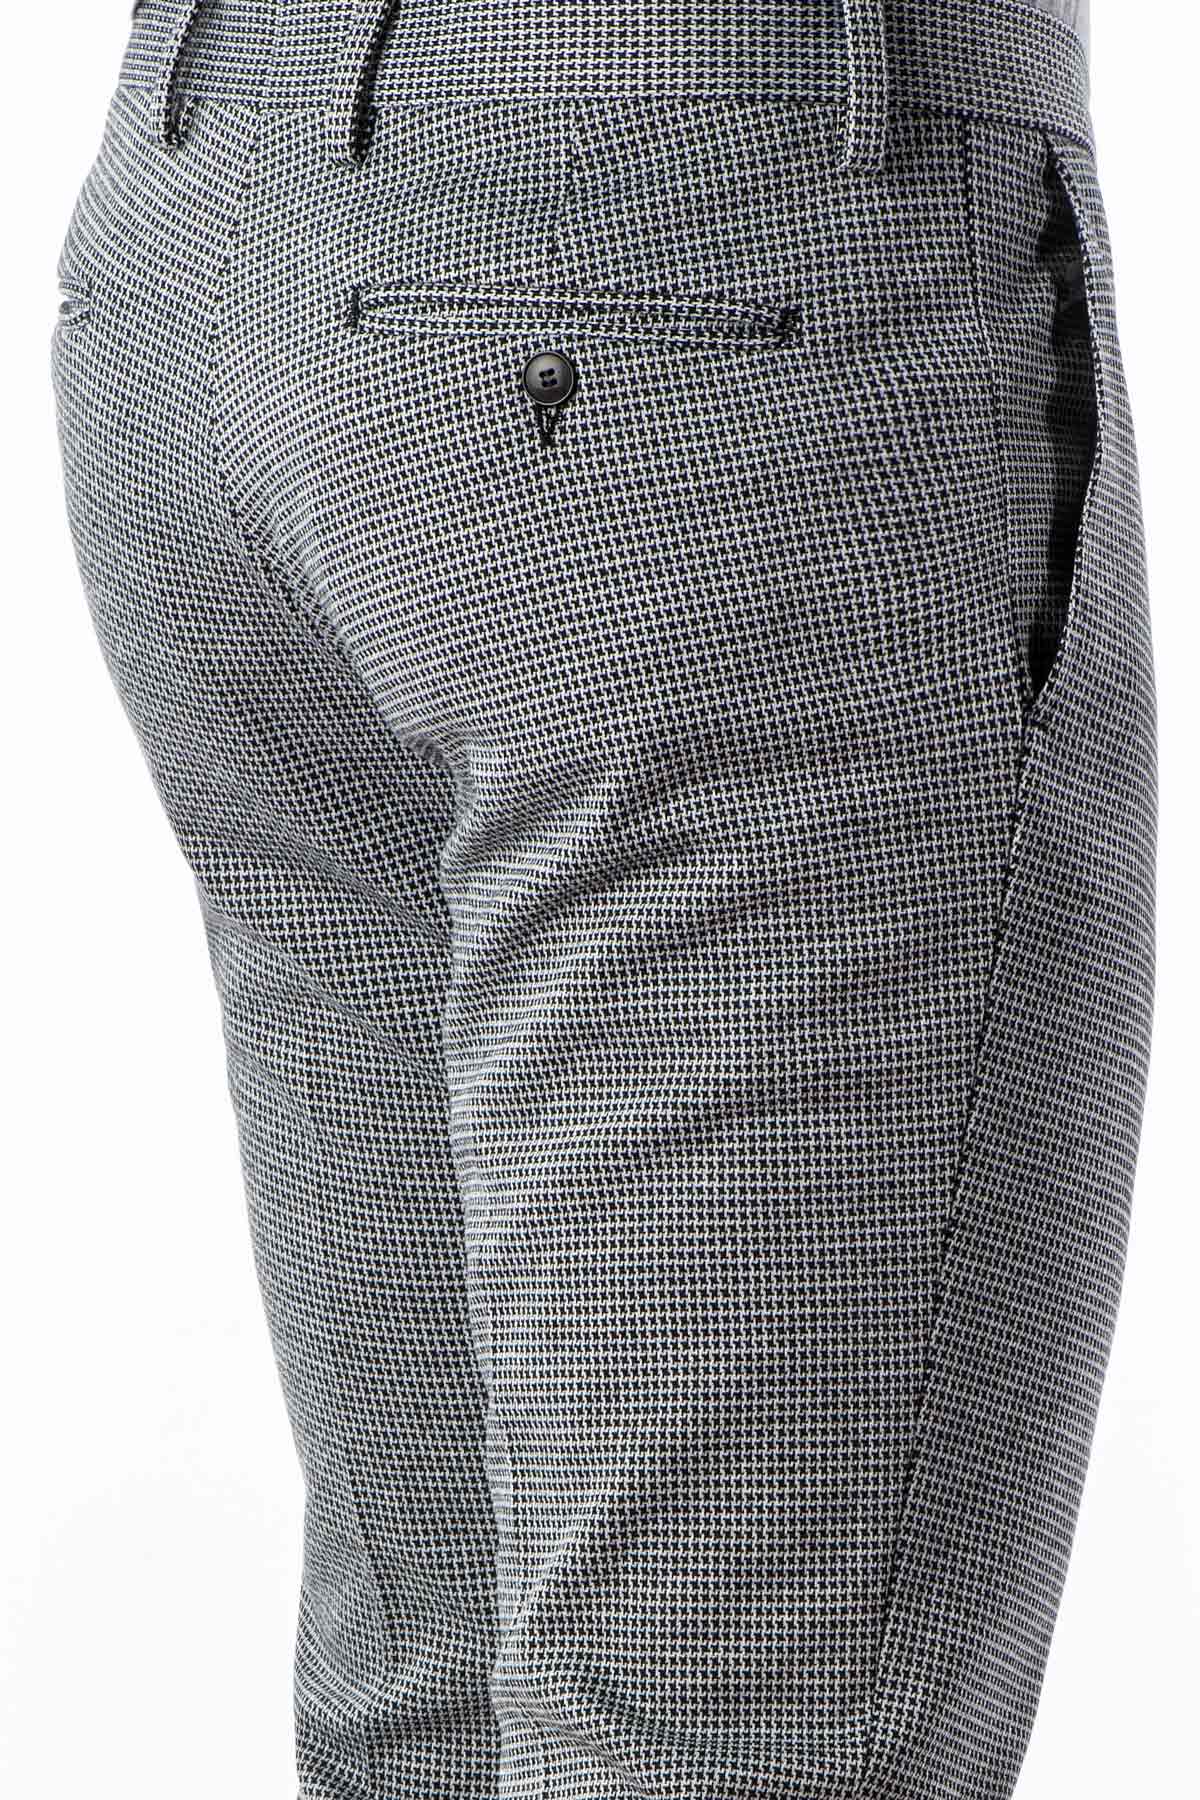 Pantalone tweed lana